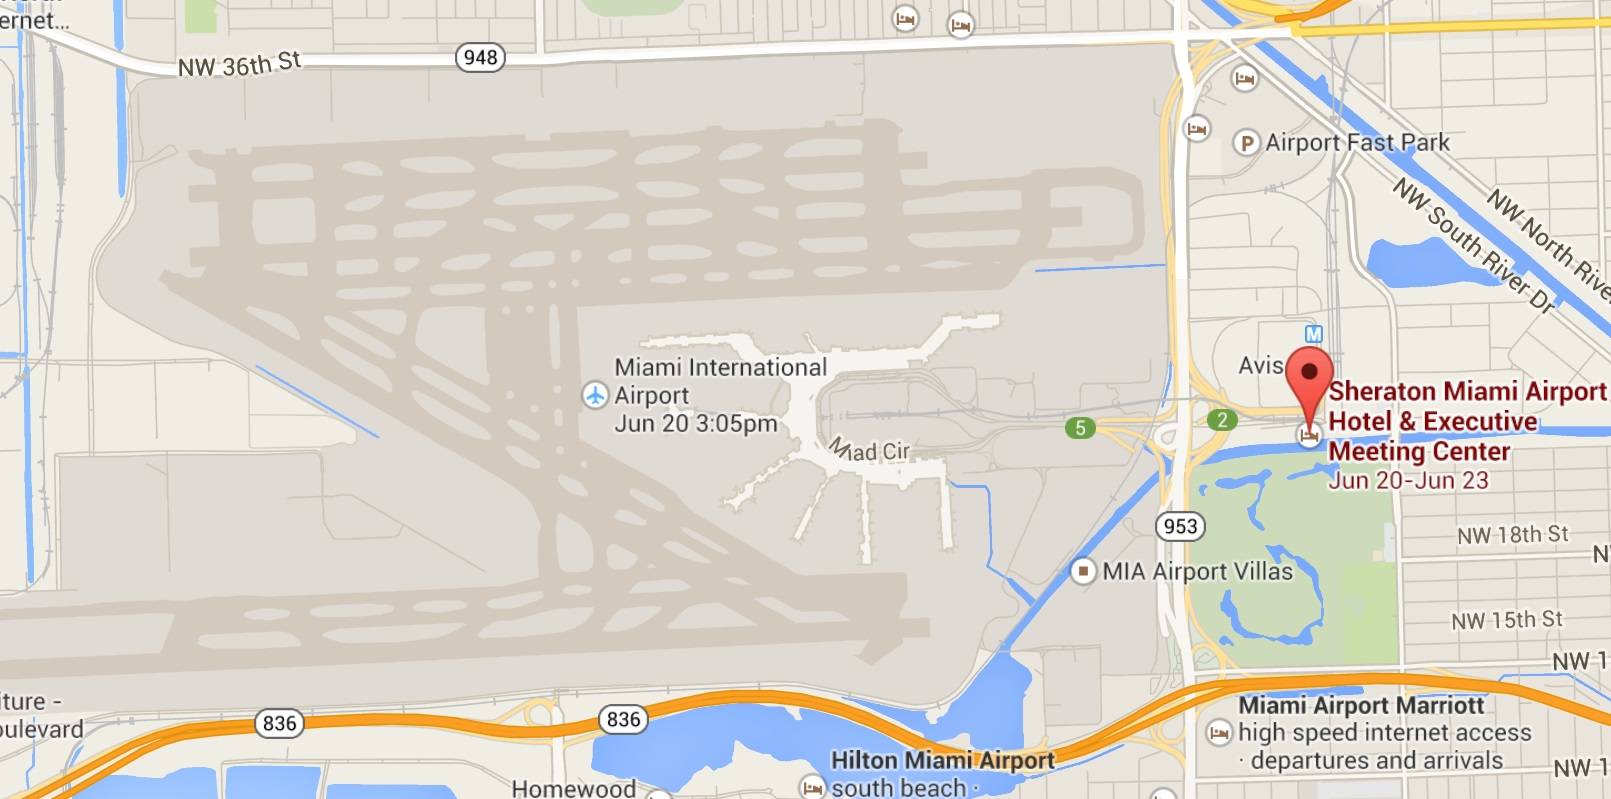 Аэропорт майами интернешнл (название miami international airport, mia): описание, расположение и контактная информация